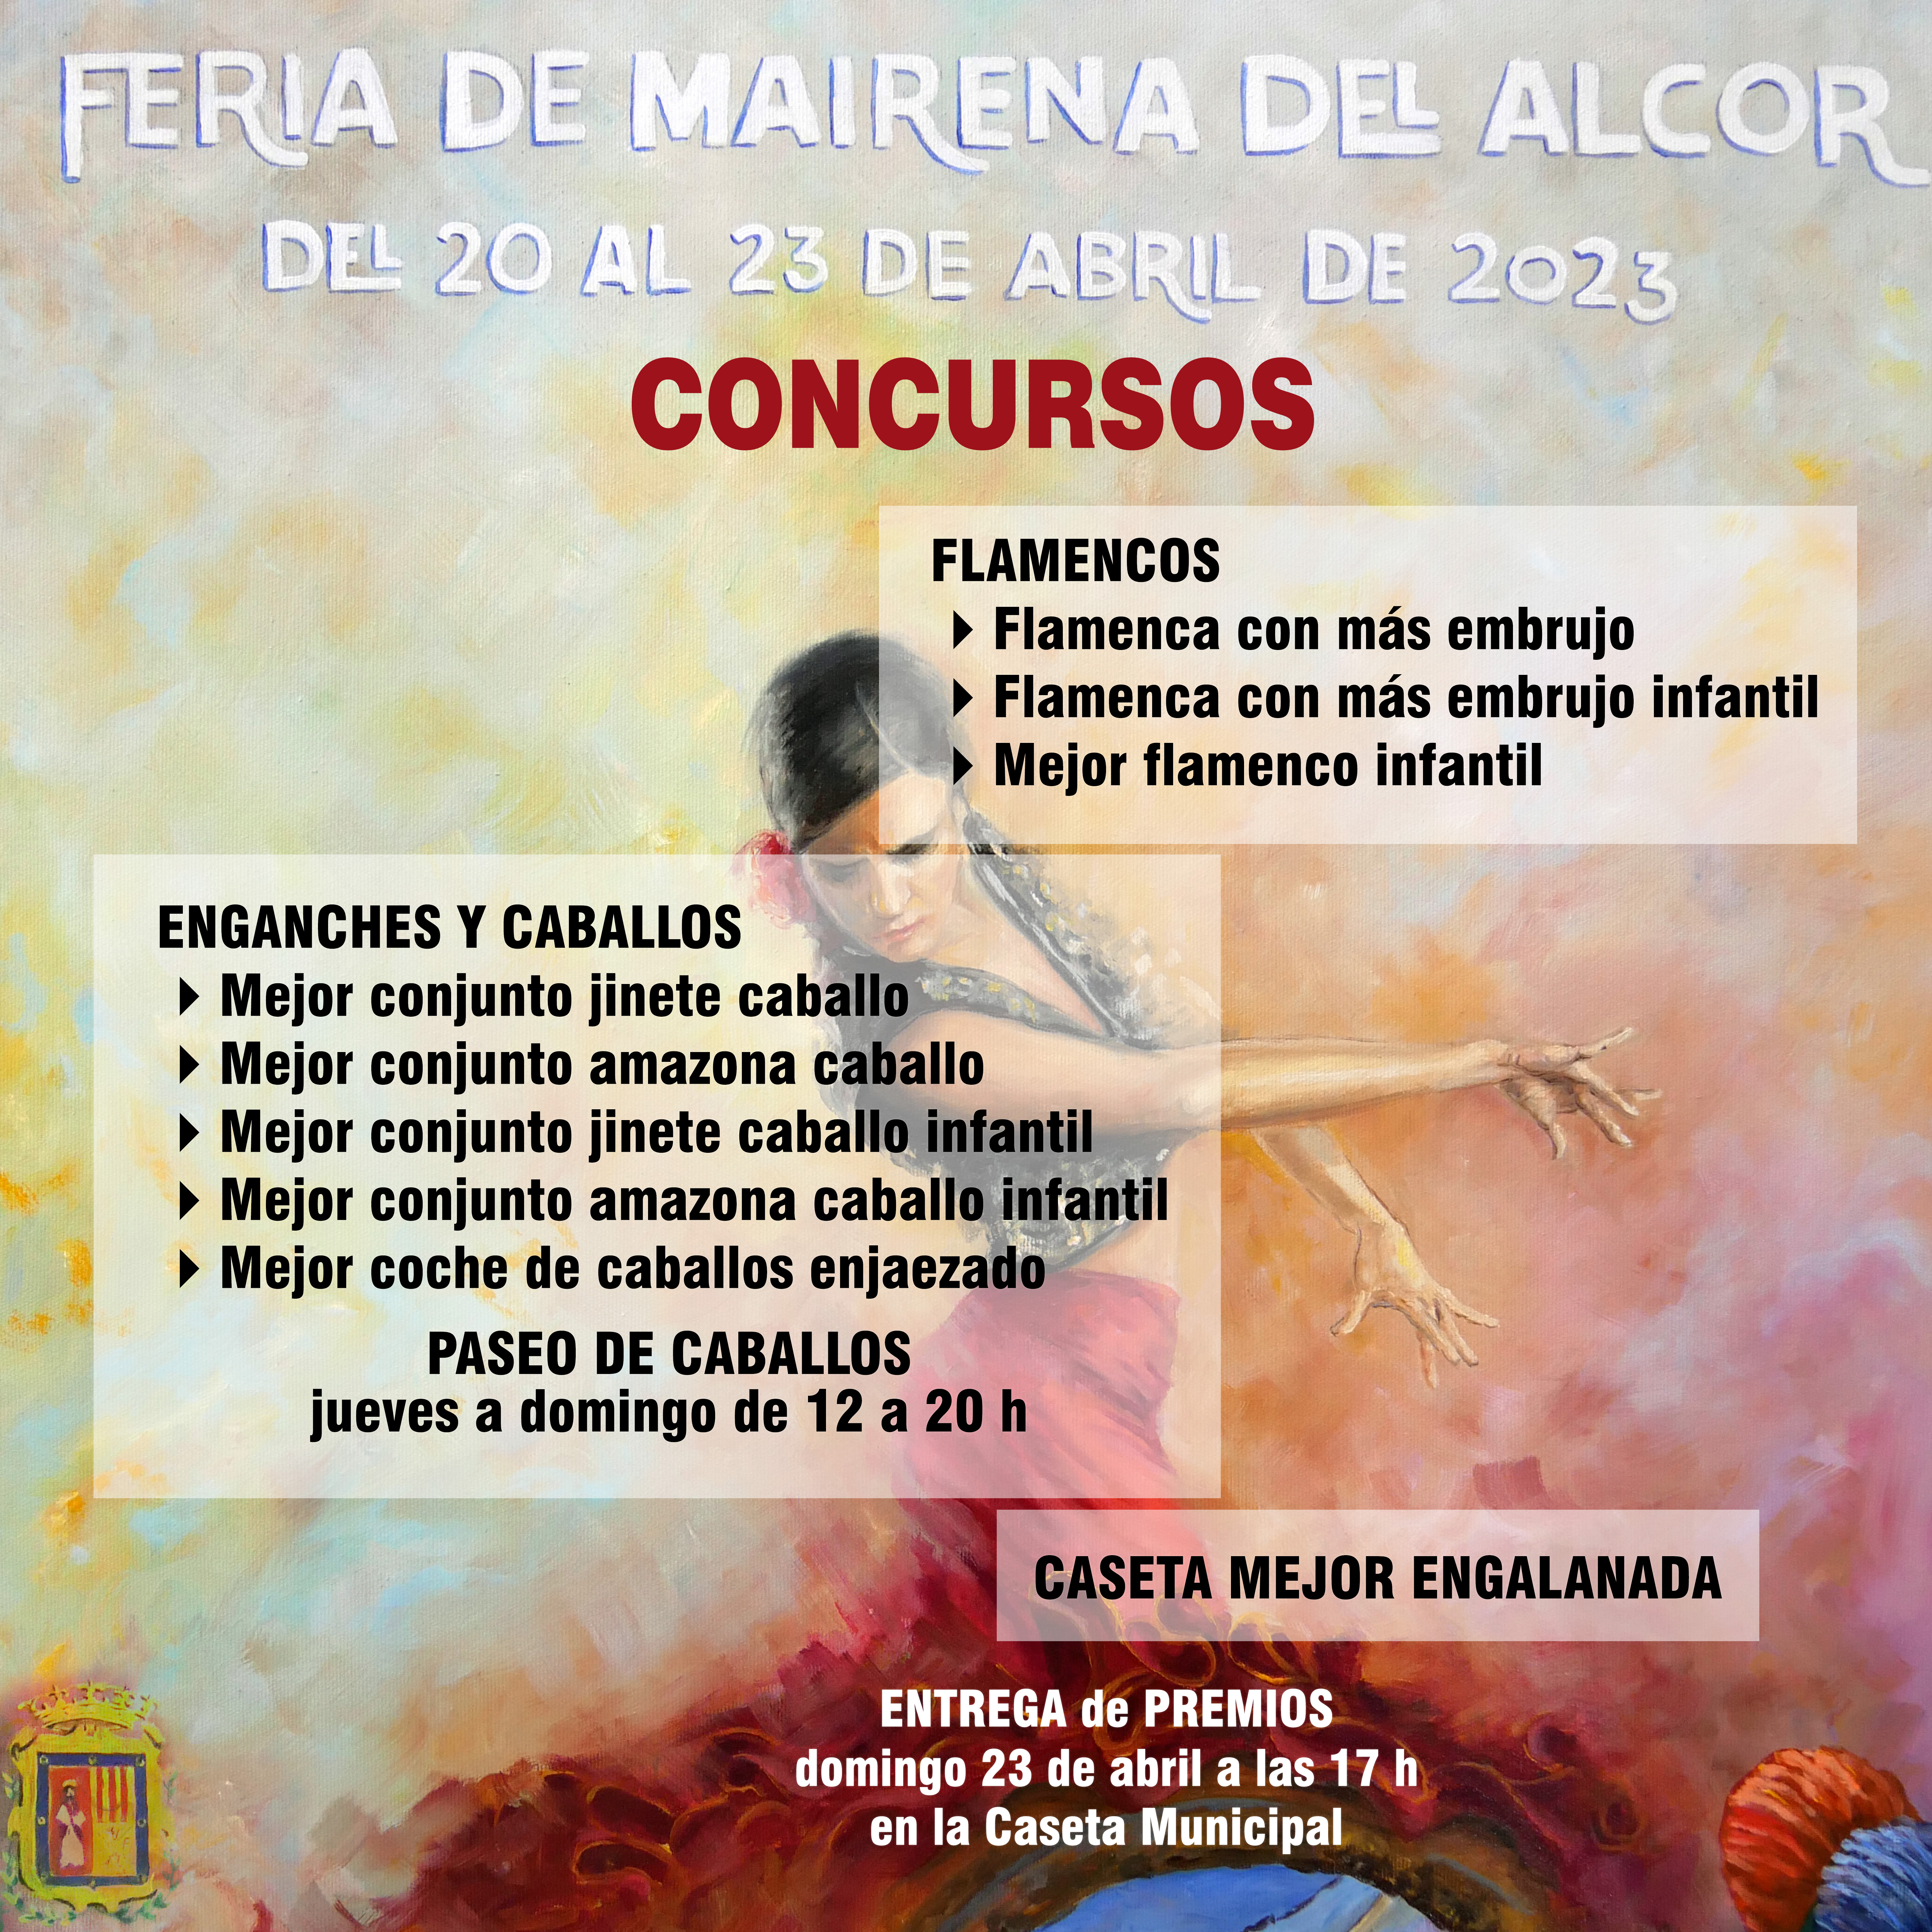 CartelConcursosFeria2023